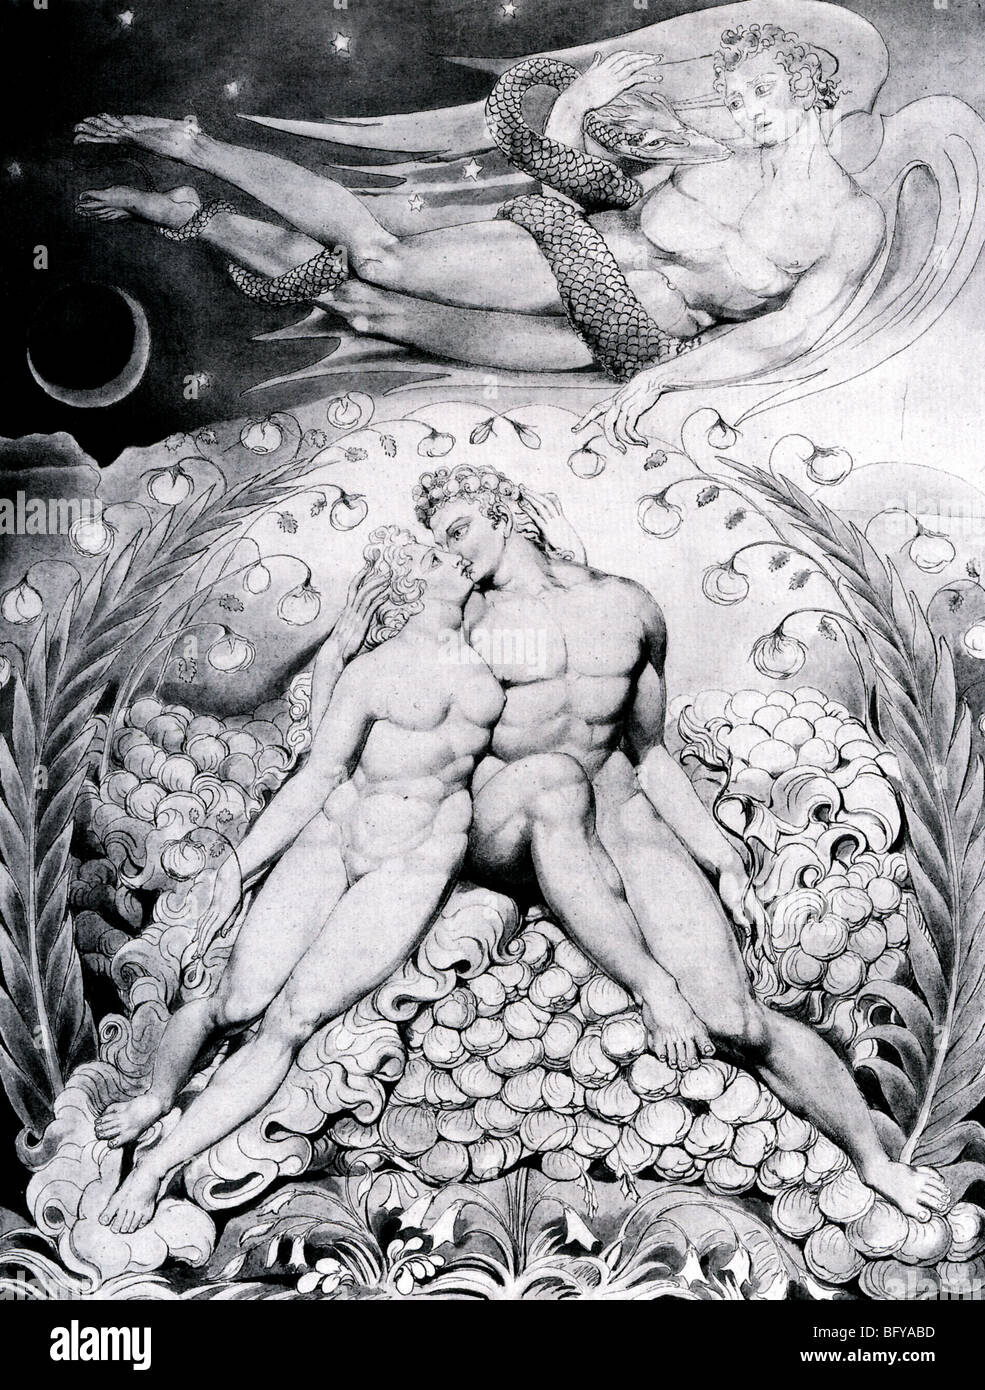 Paradis perdu illustration par William Blake en 1807 montre Adam et Eve vu par Satan tenant un serpent Banque D'Images